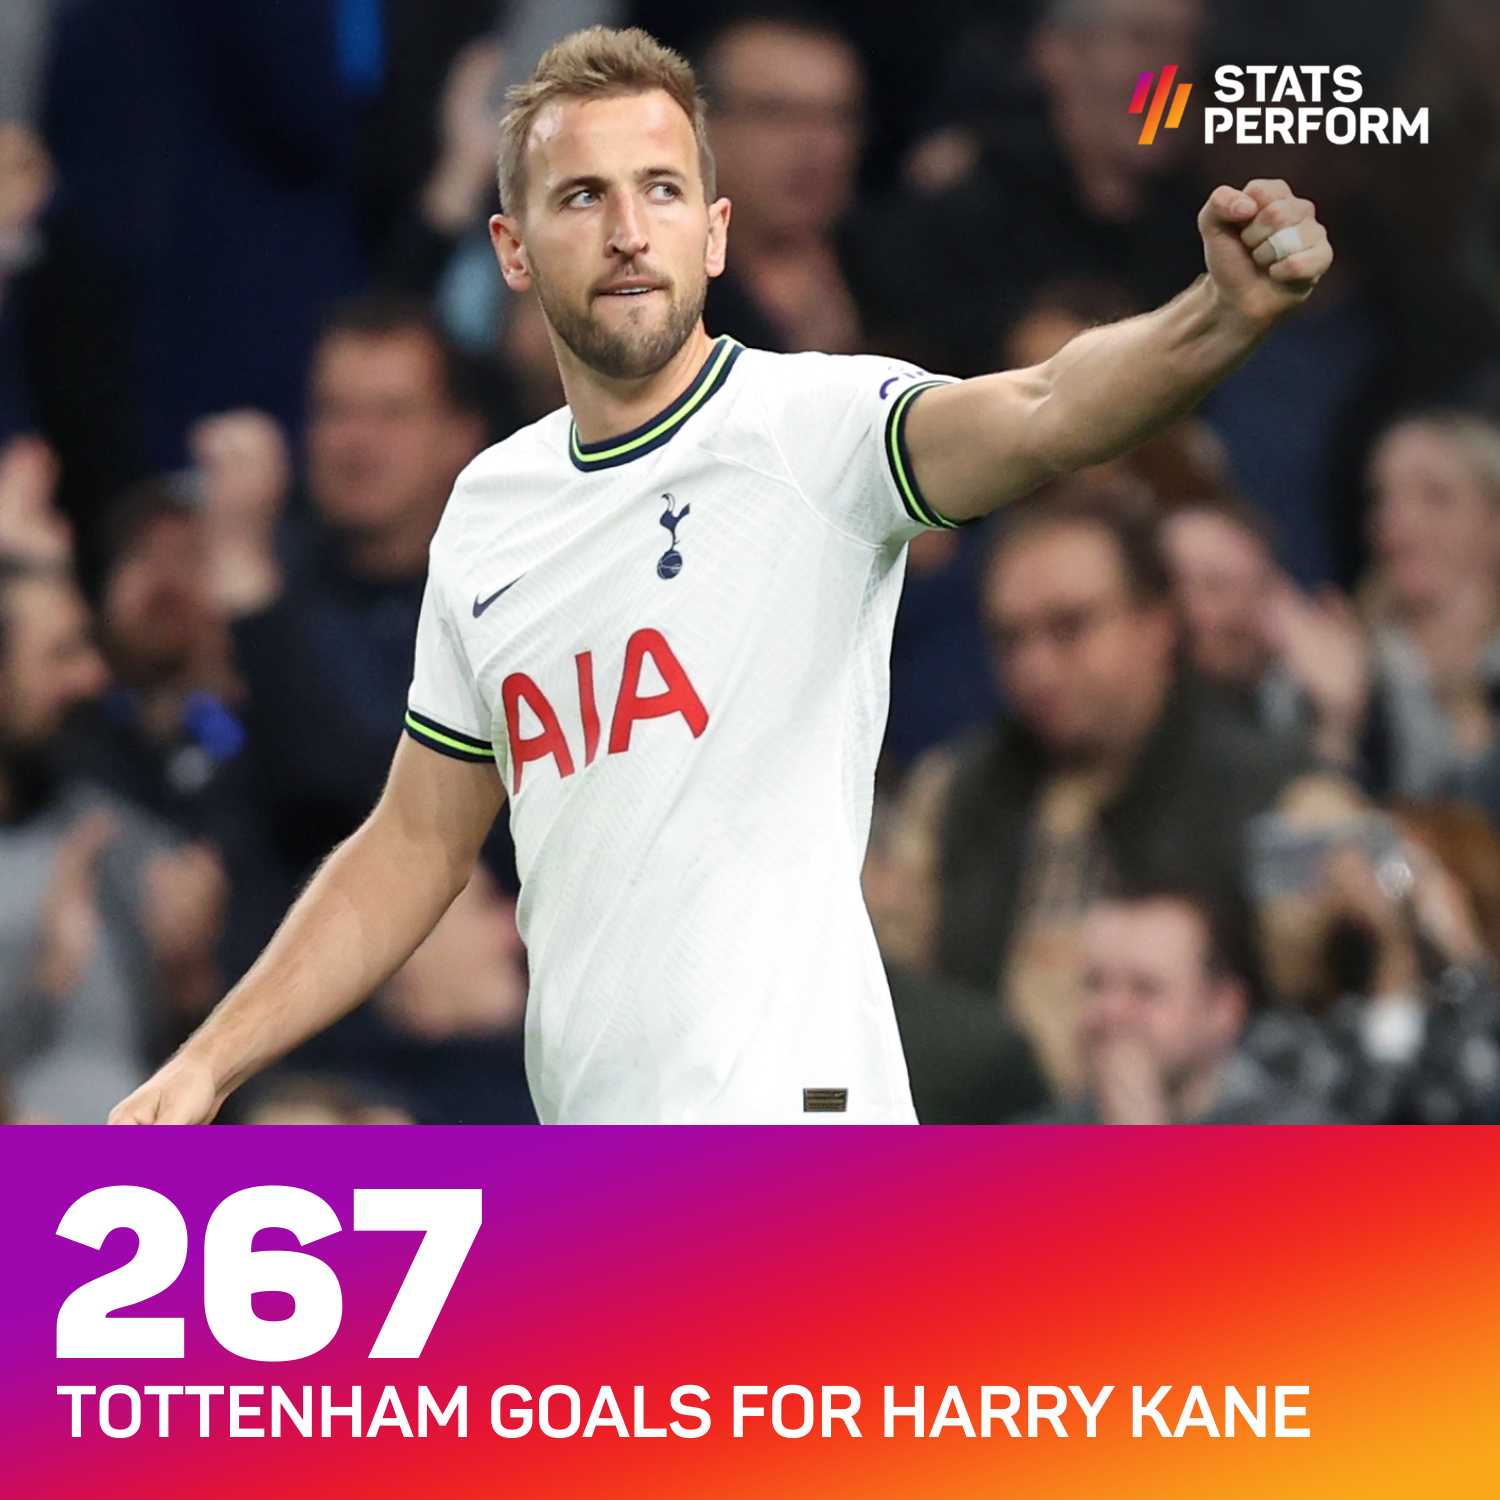 Harry Kane is now Tottenham's record goalscorer